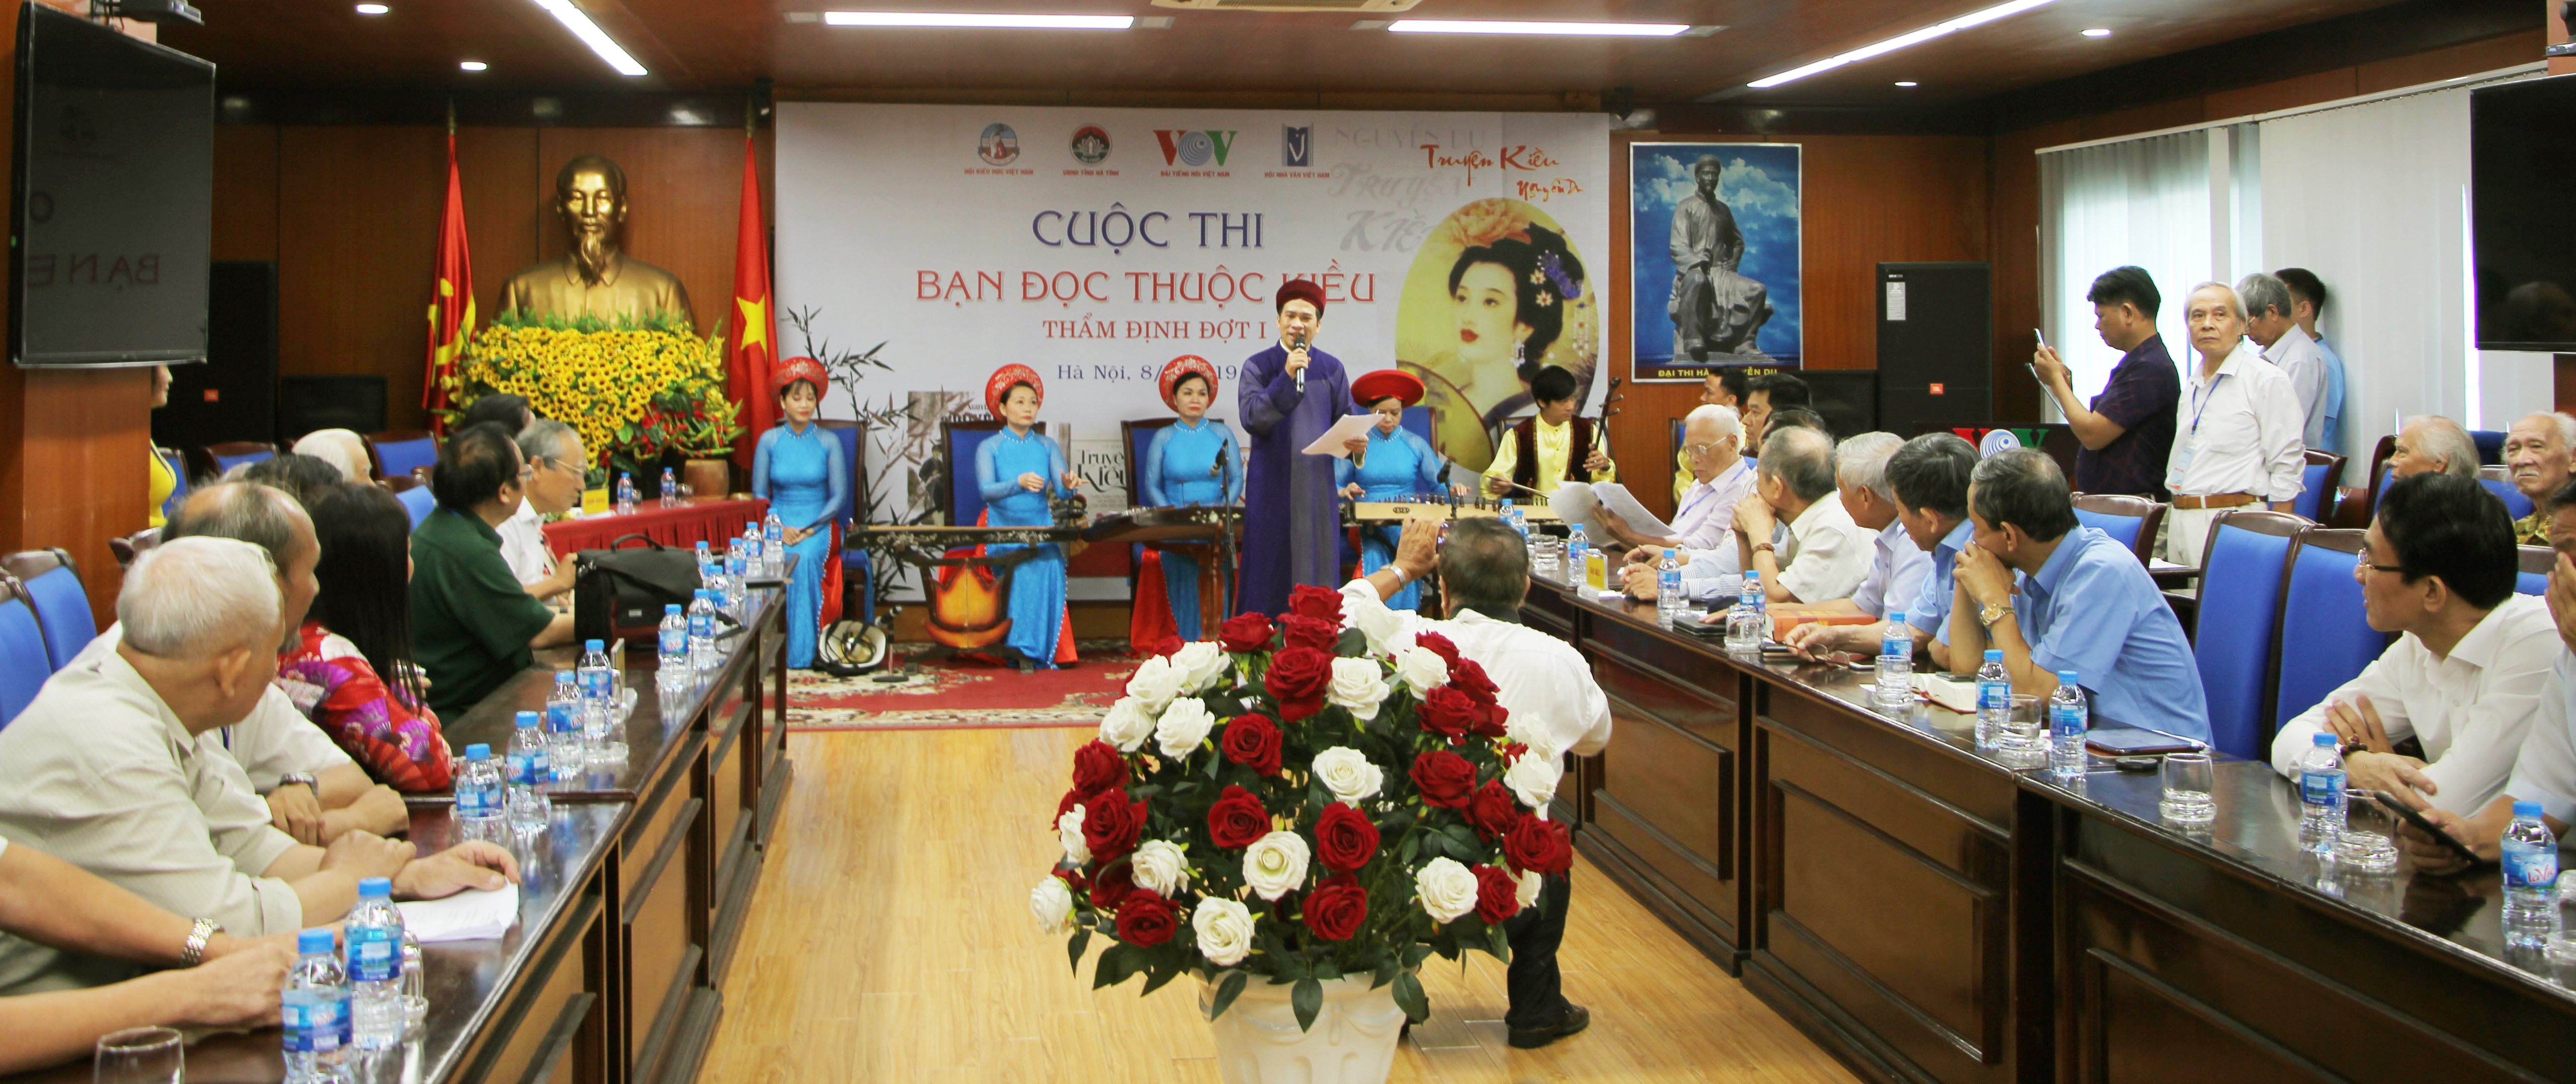 Cuộc thi bạn đọc thuộc Kiều đợt 1 đã được tổ chức tại Hà Nội